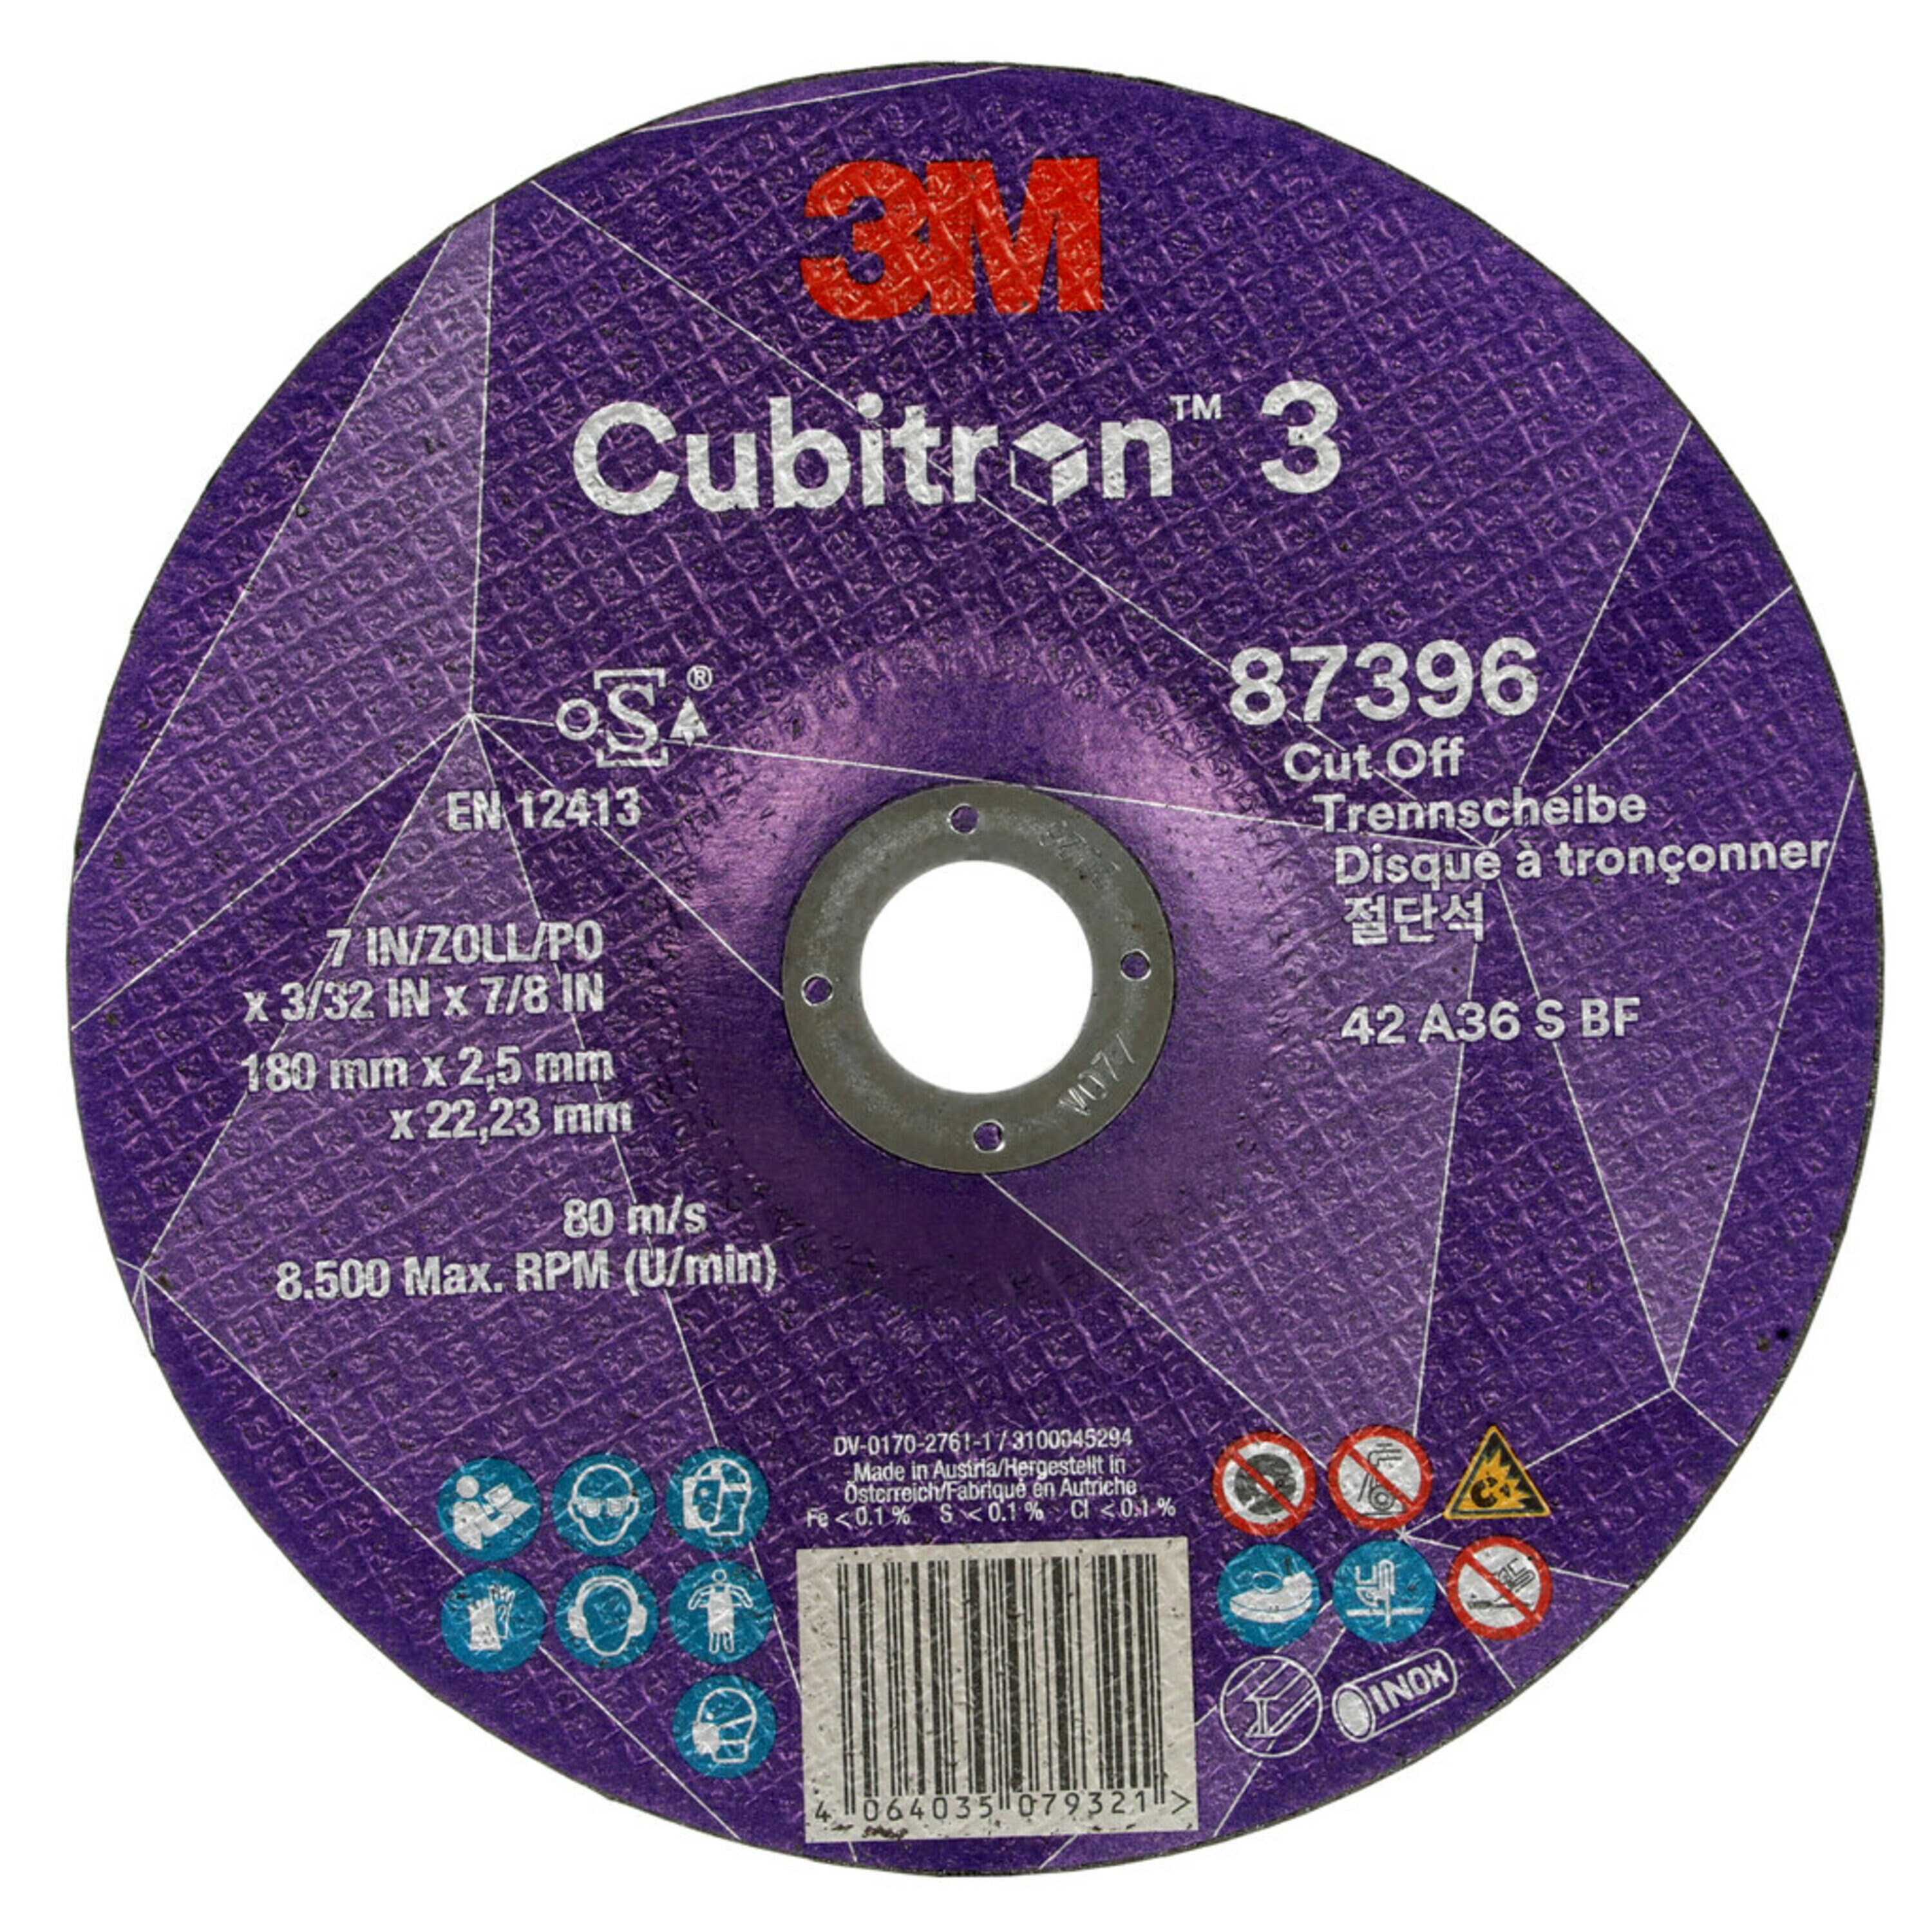 Disco de corte 3M Cubitron 3, 180 mm, 2,5 mm, 22,23 mm, 36 , tipo 42 #87396